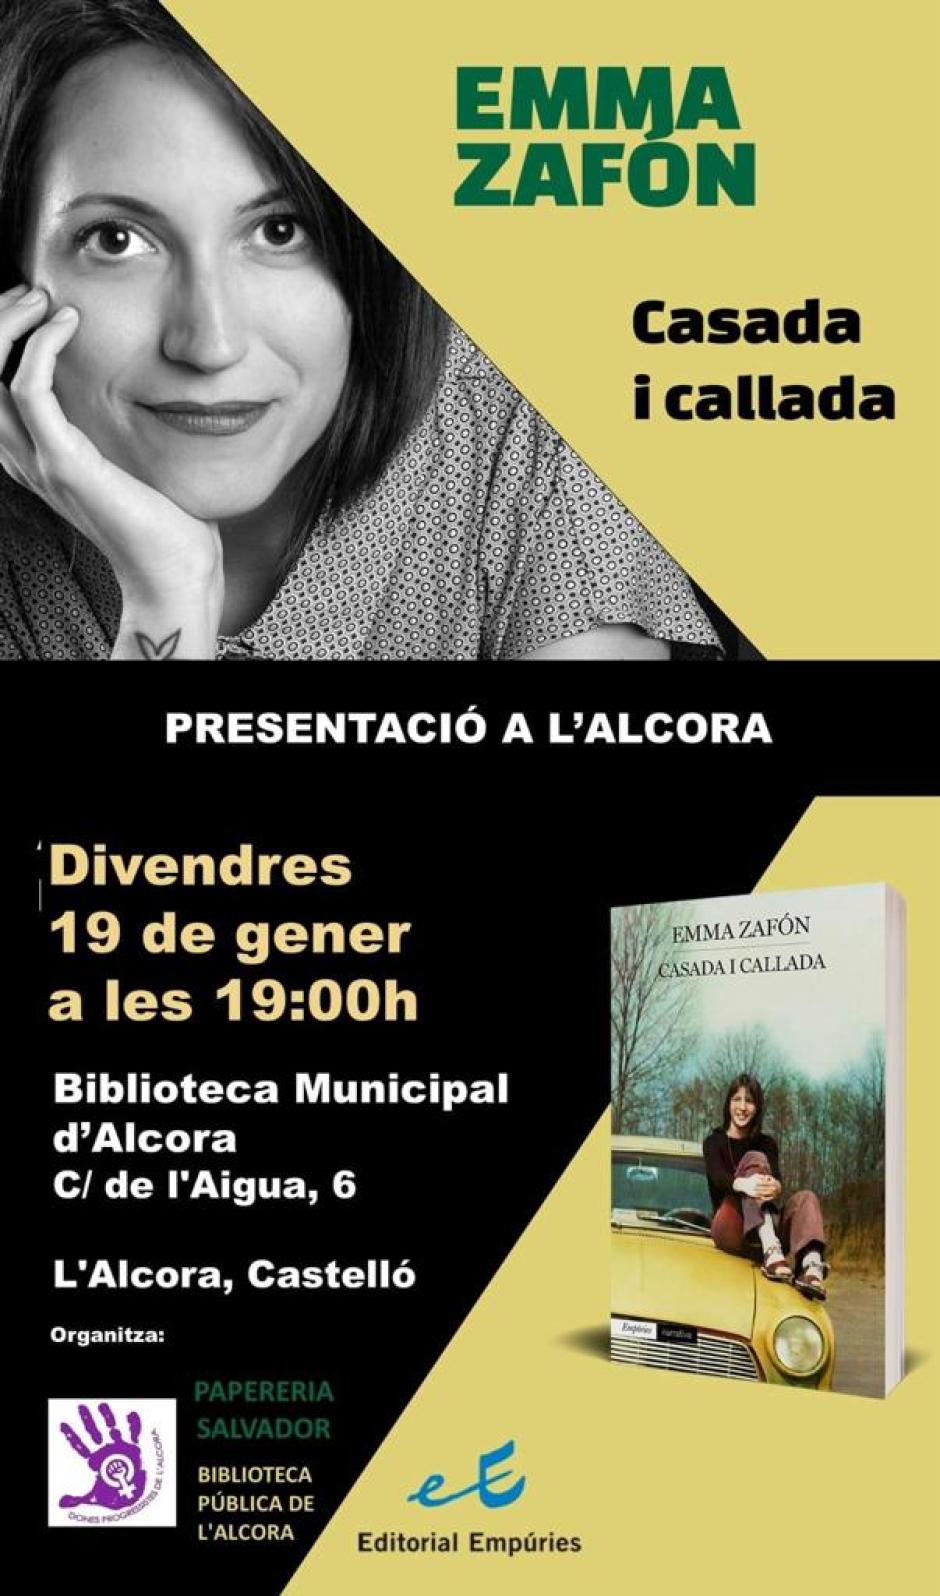 Cartel de la presentación del libro de Emma Zafón en Alcora